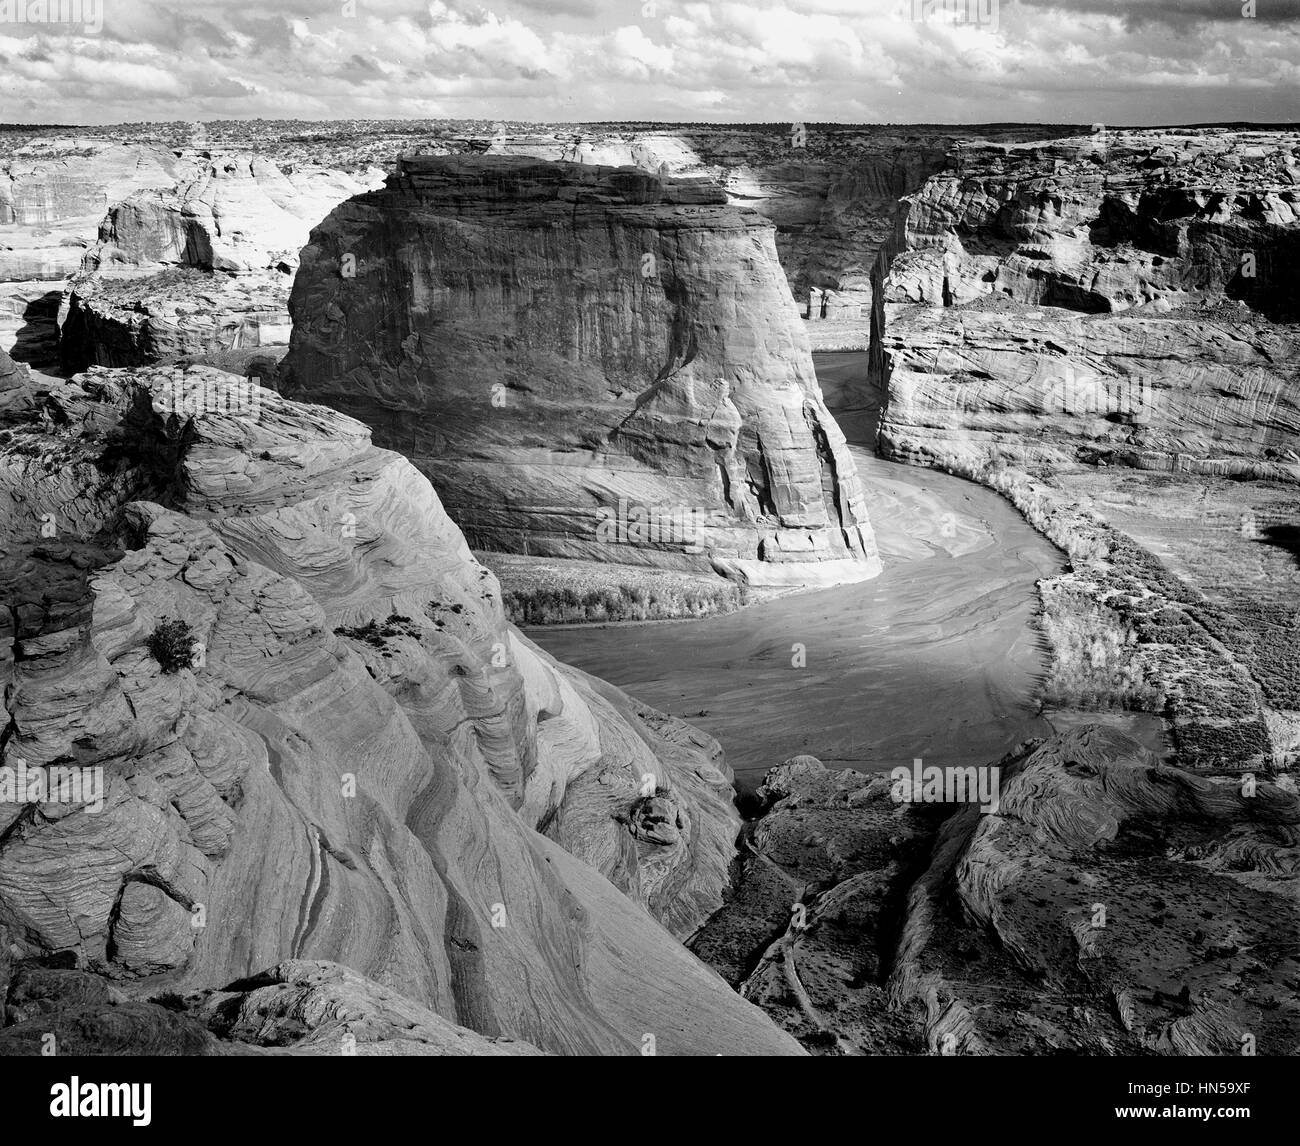 ANSEL ADAMS (1902-1984), photographe américain. Photo de Canyon de Chelly en 1941 Banque D'Images